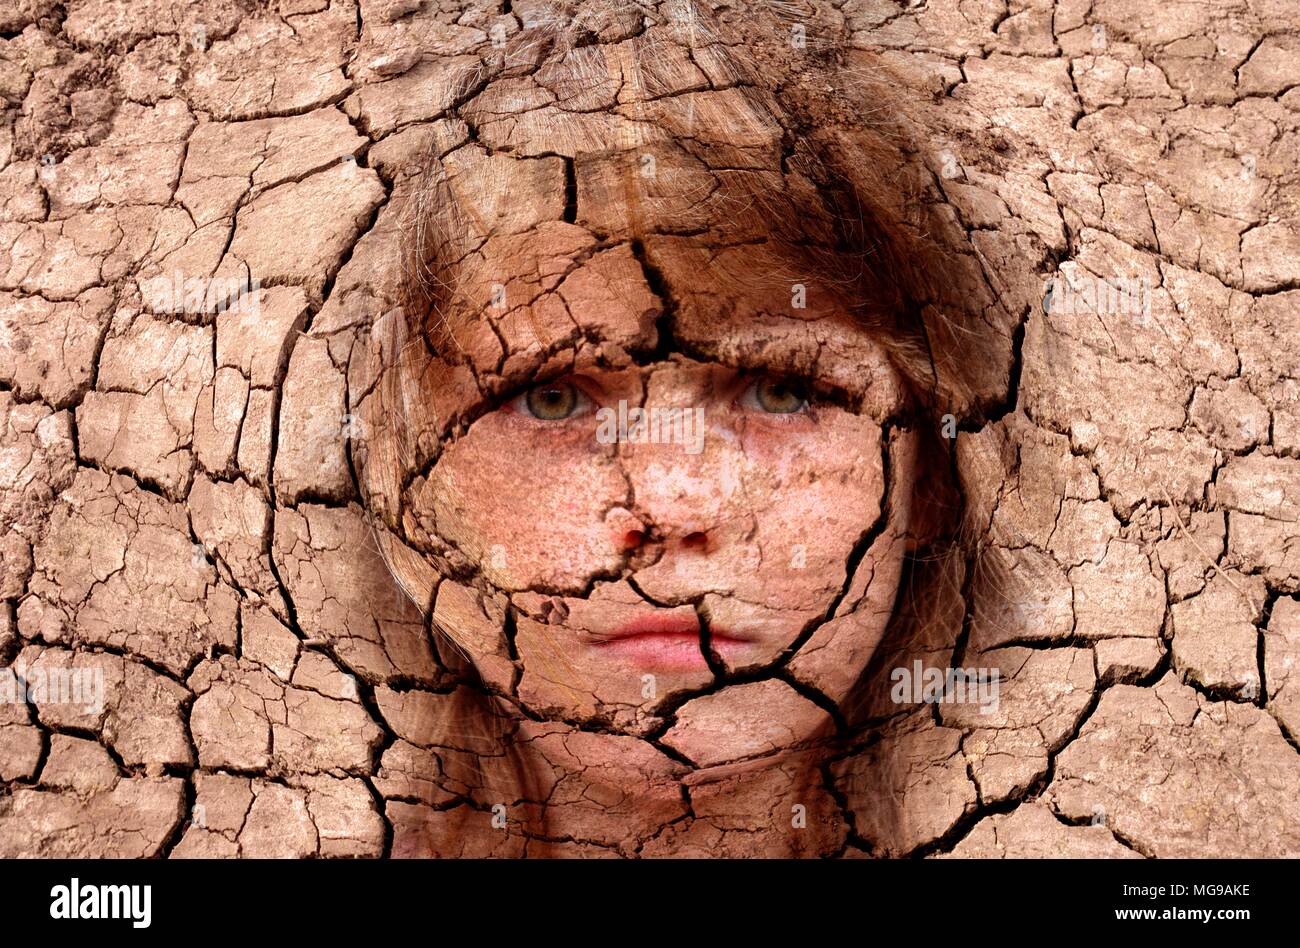 Dry cracked earth avec visage de la fille, conceptual image. Banque D'Images